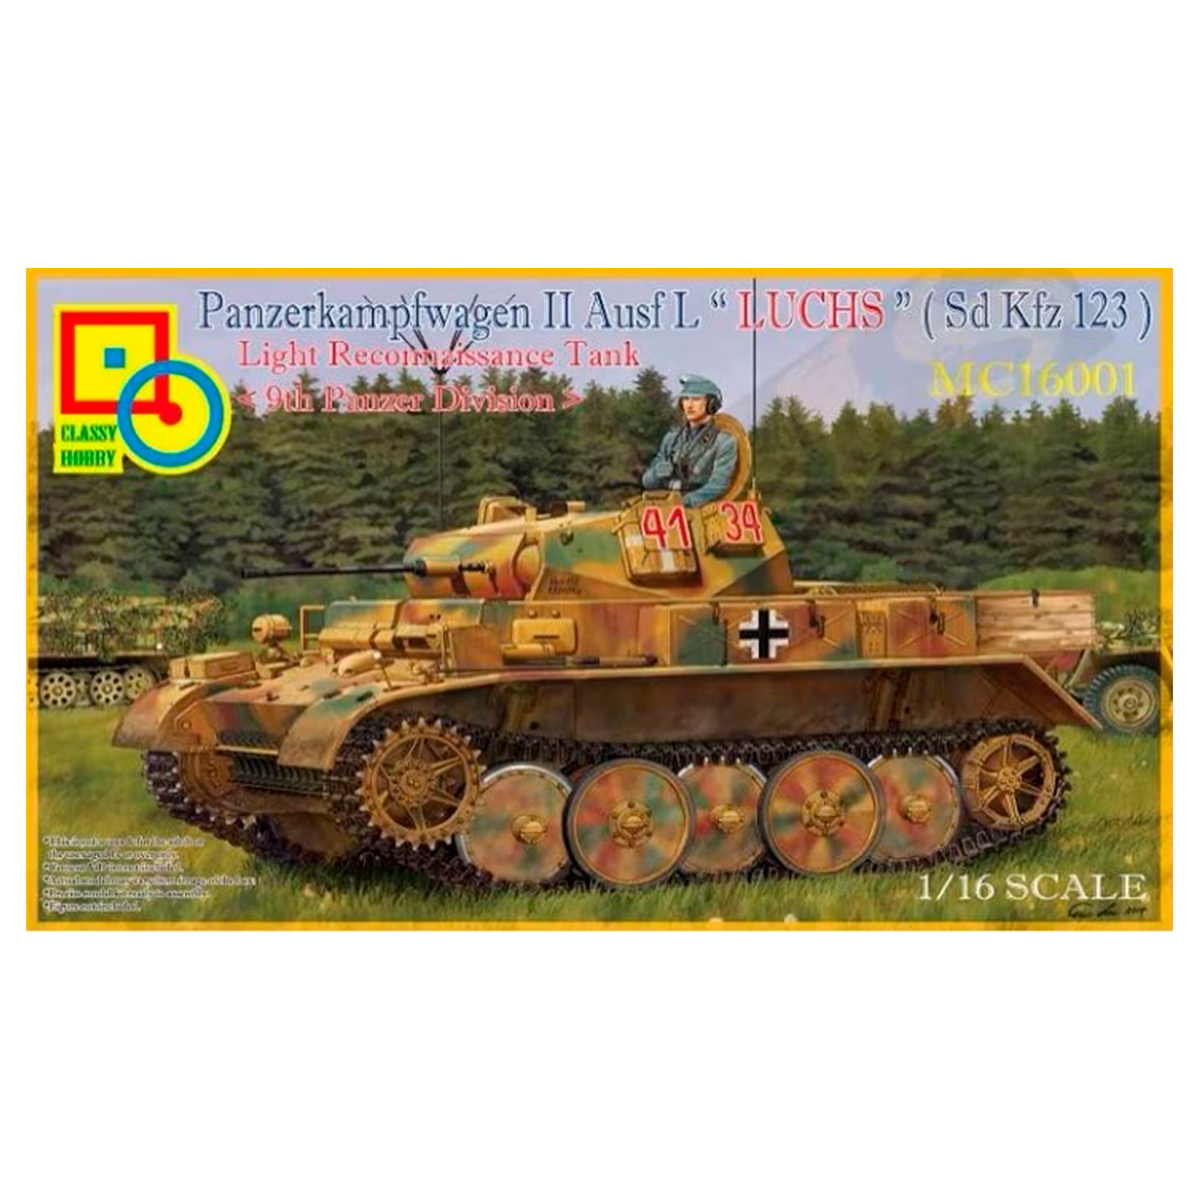 1/16  Panzerkampfwagen II Ausf.L “Luchs” (Sdkfz.123) Light Reconnaissance Tank (9th Panzer Division)